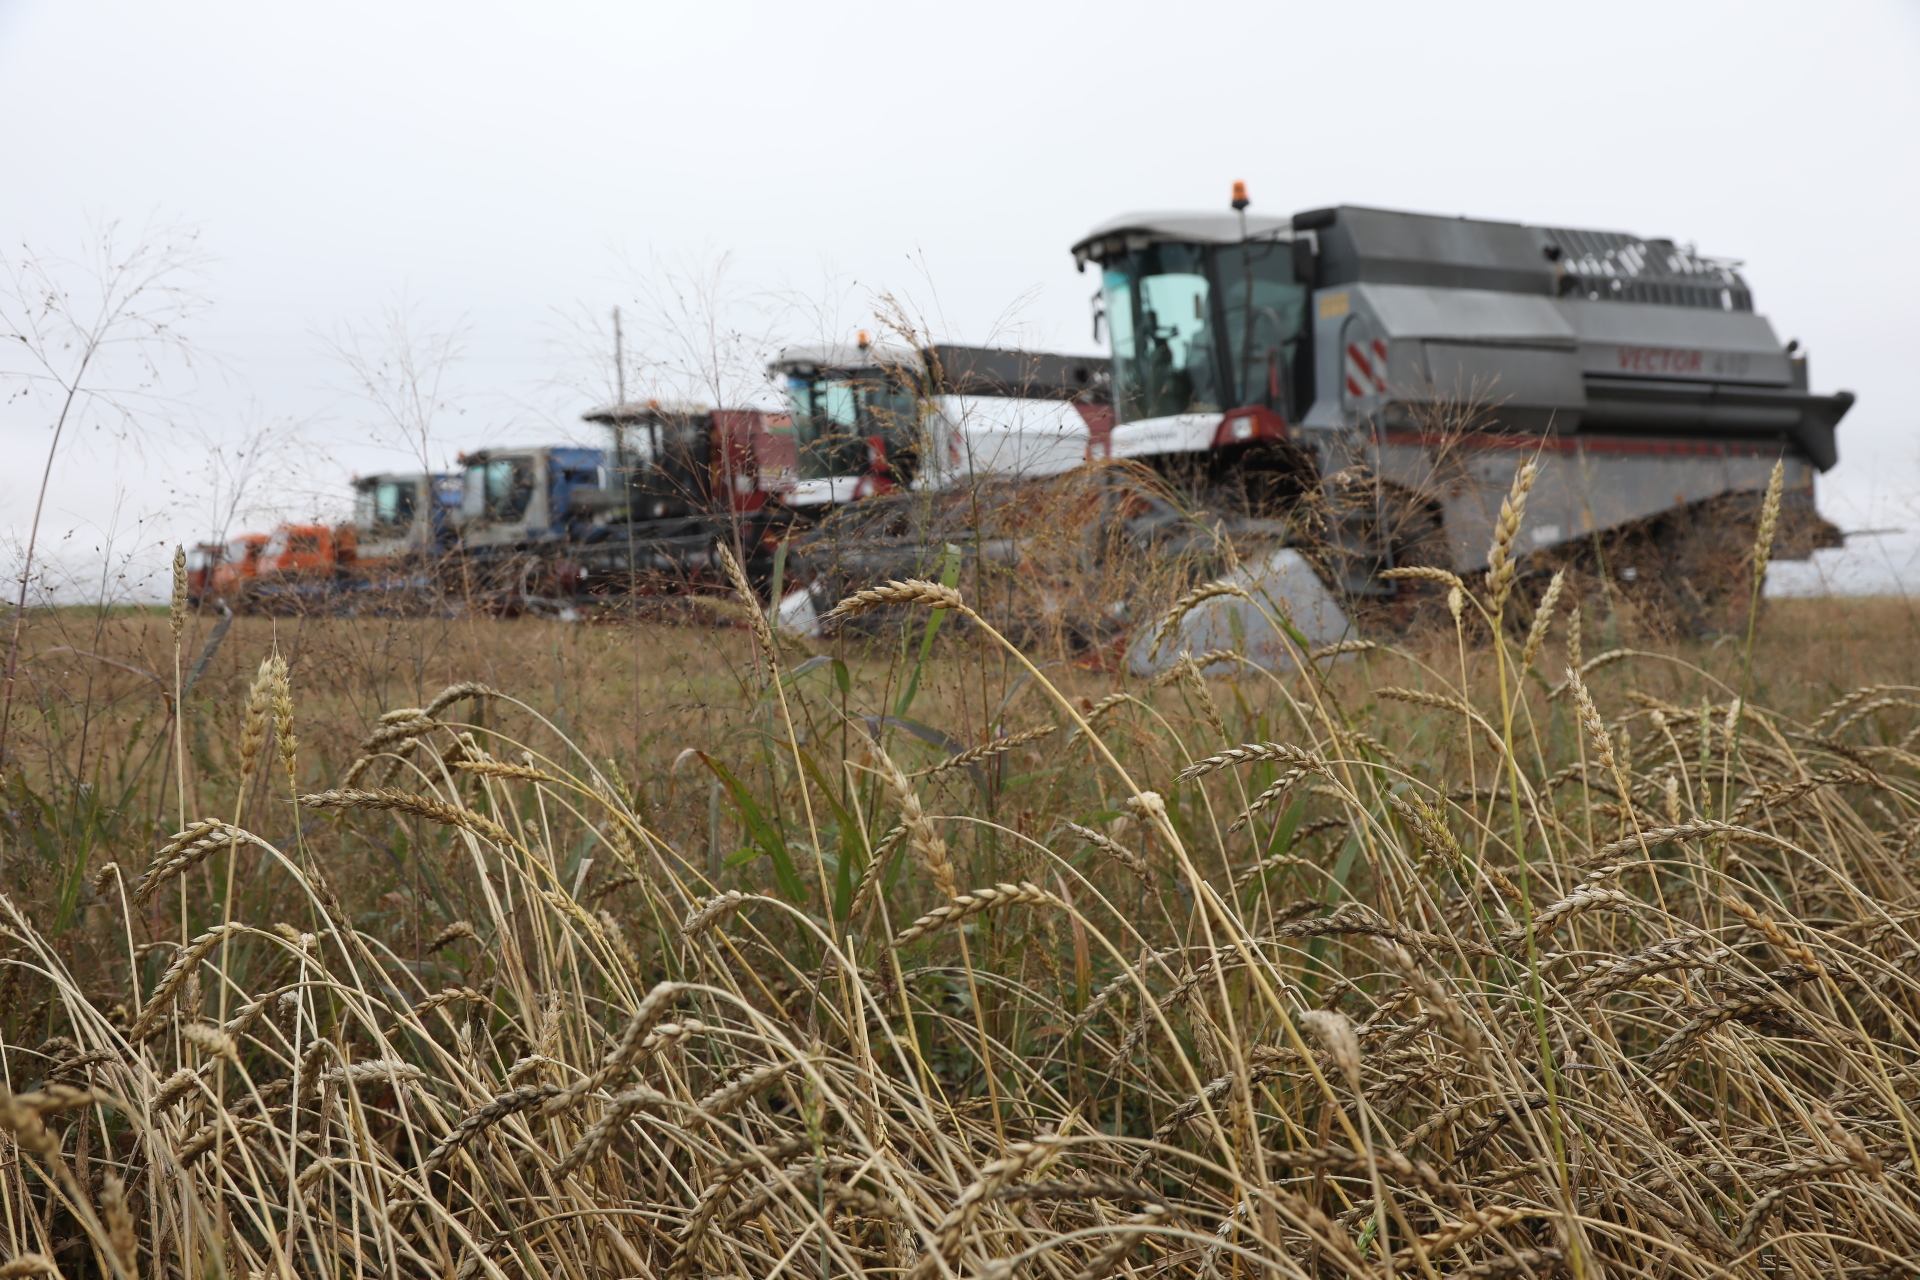 Земледельцы Красноярского края засыпали в закрома более двух миллионов тонн зерна